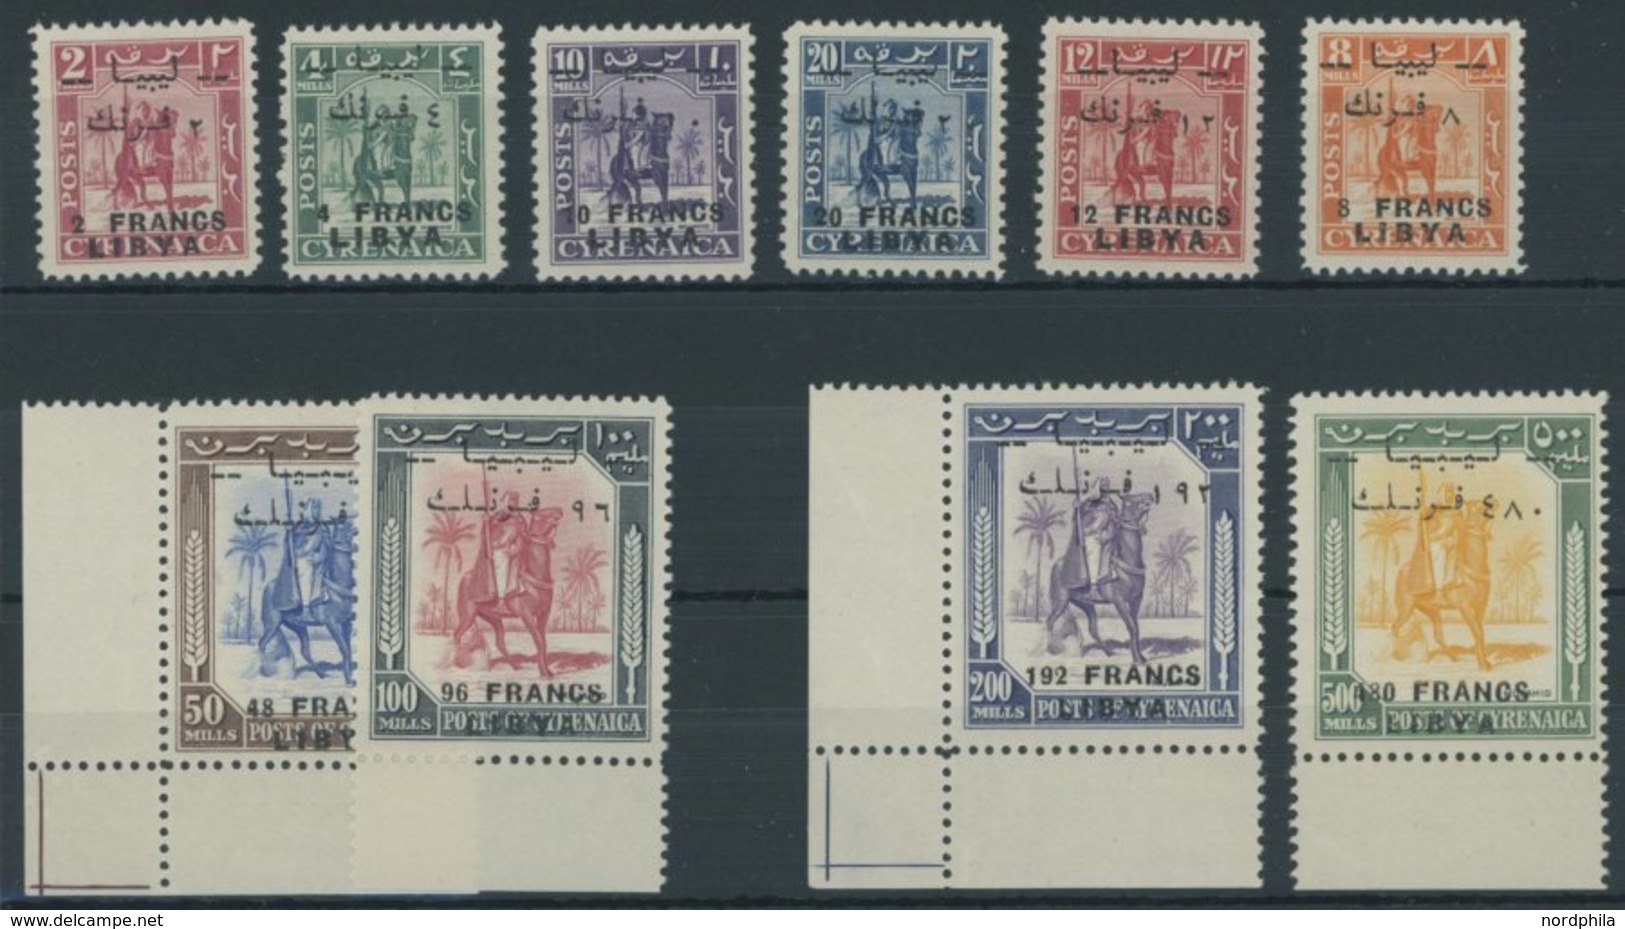 LIBYEN 14-23 **, 1951, Senussi-Kampfreiter, Aufdruck Auch In Französischer Währung, Postfrischer Prachtsatz, Signiert Zu - Libia